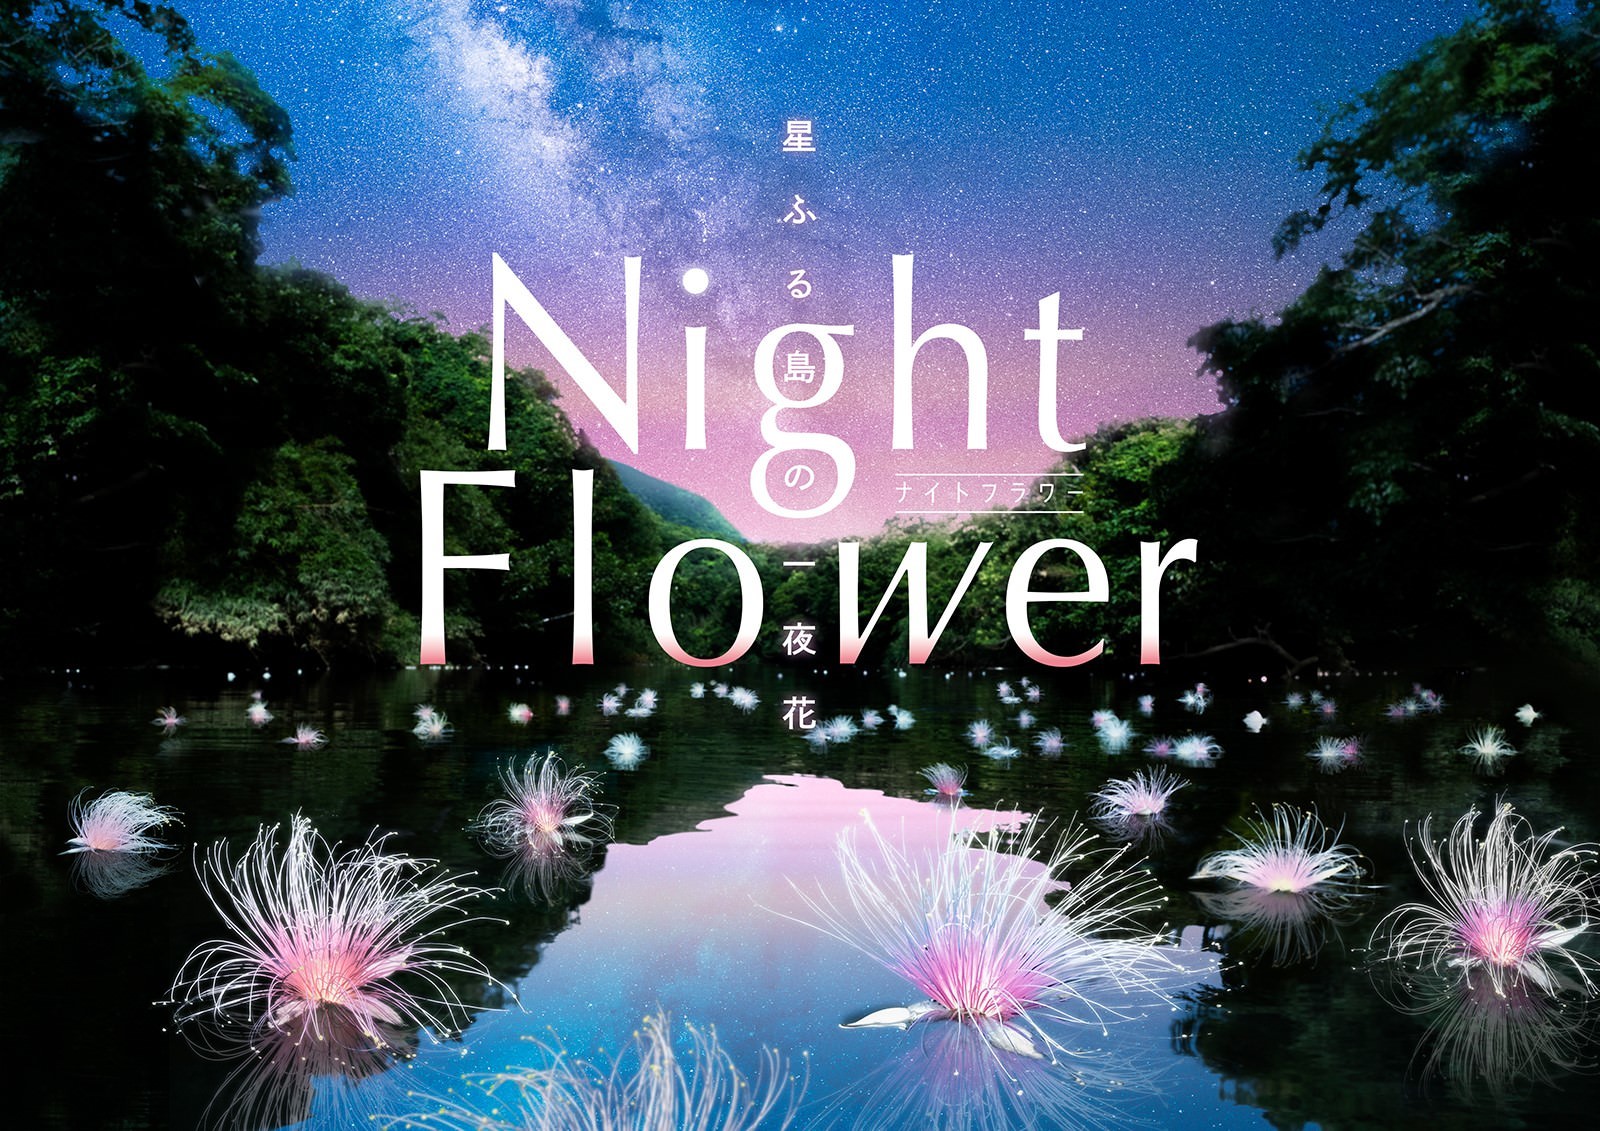 中川大志と巡る、星と幻の花を探す旅
『Night Flower ～星ふる島の一夜花～』
2021年11月19日(金)より上映！